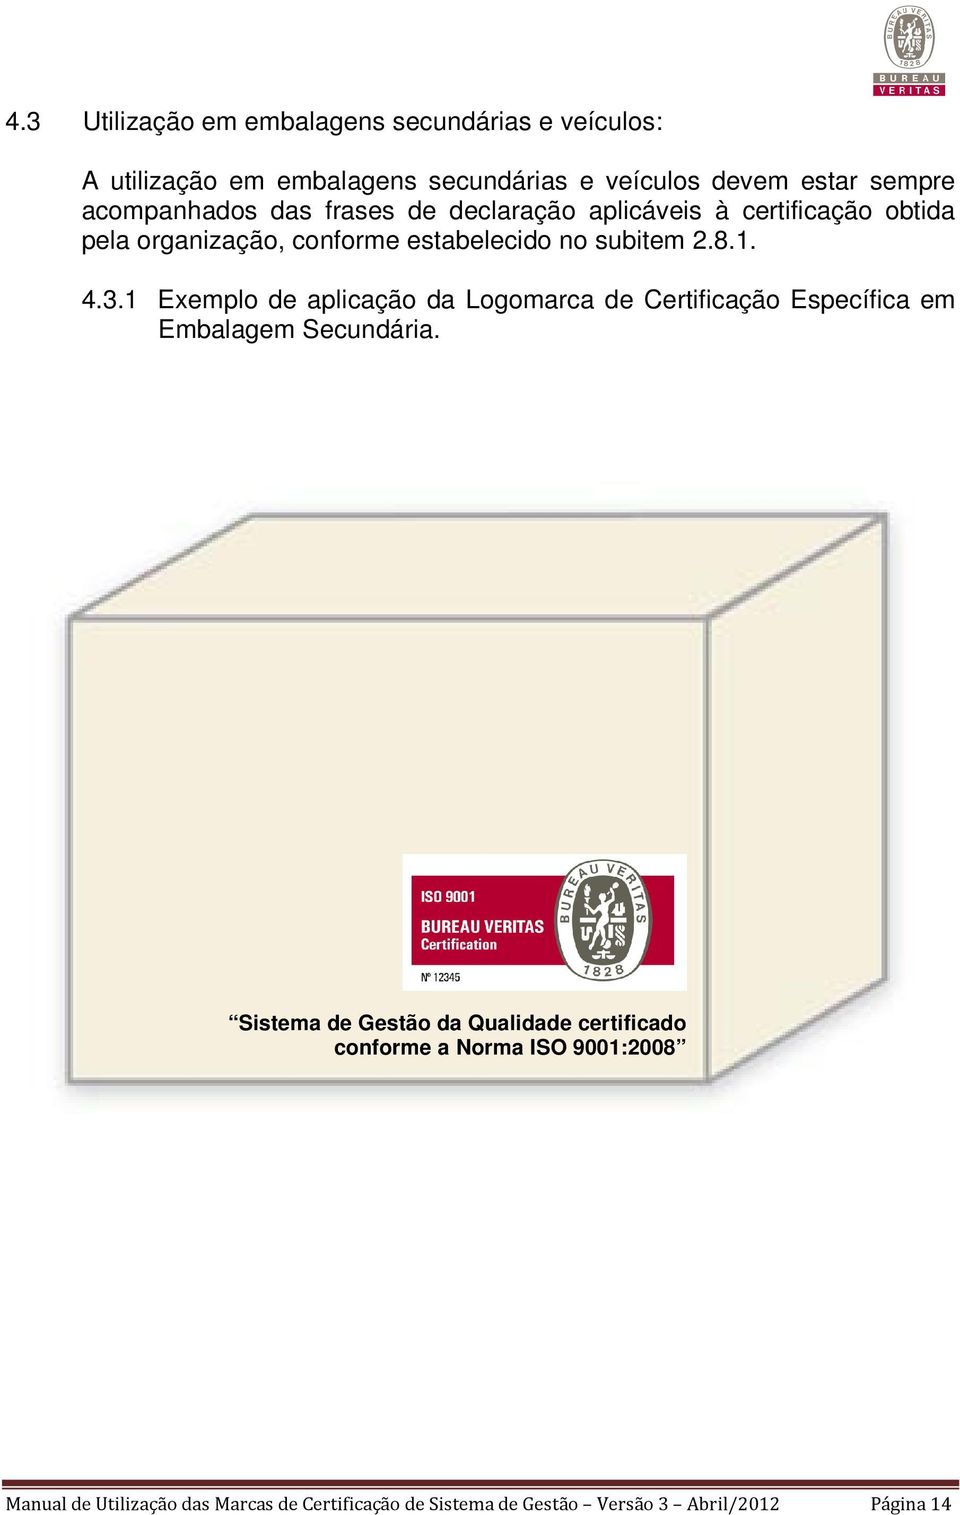 4.3.1 Exemplo de aplicação da Logomarca de Certificação Específica em Embalagem Secundária.